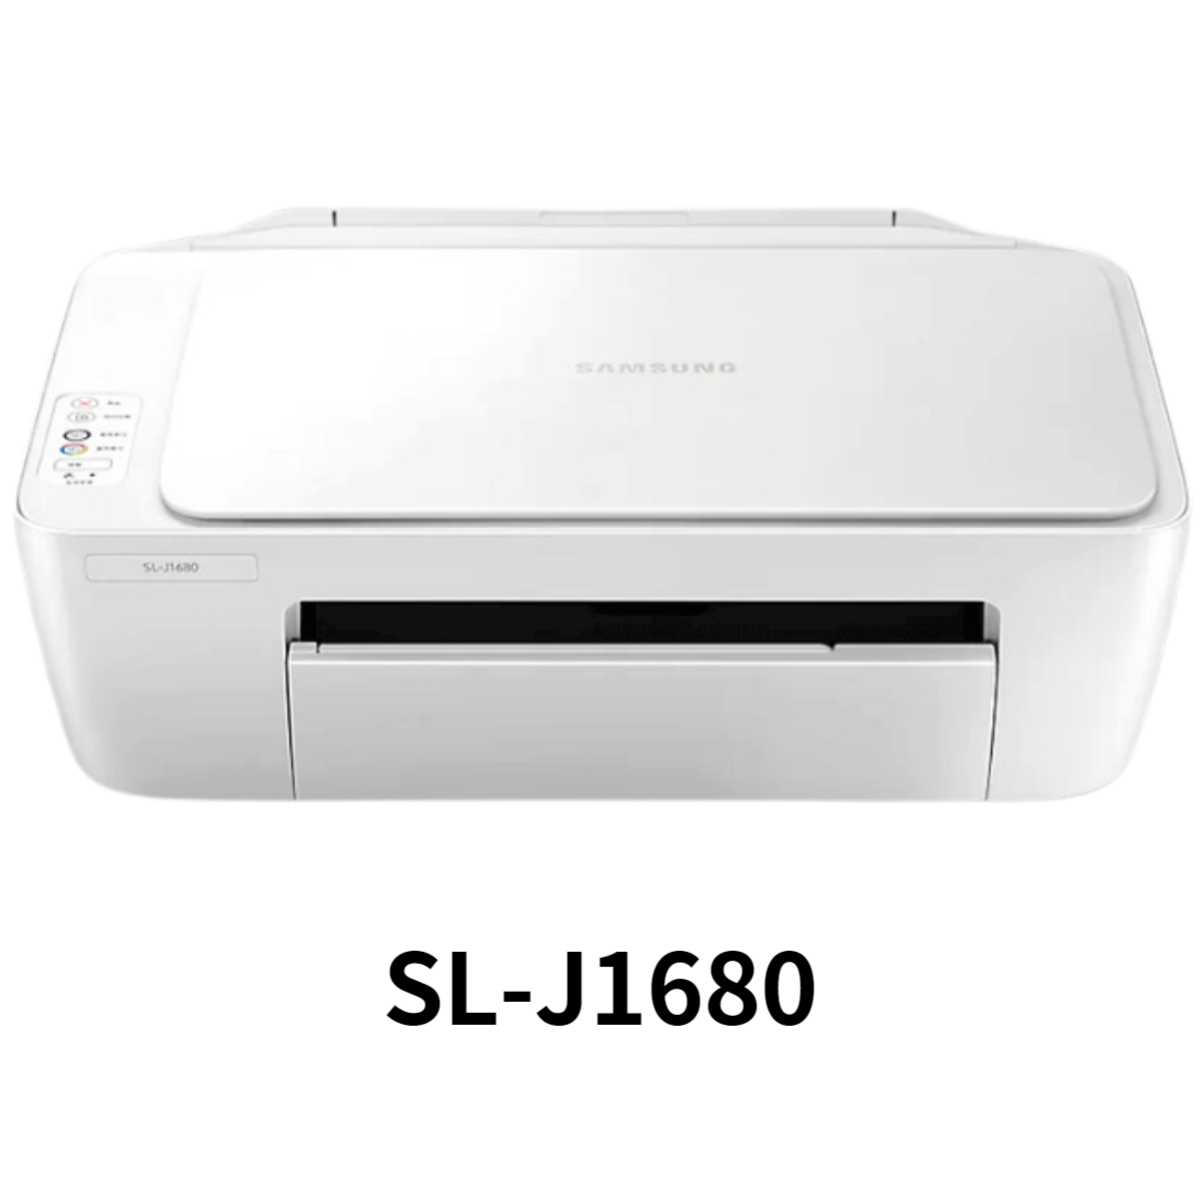 SL-J1680 프린터